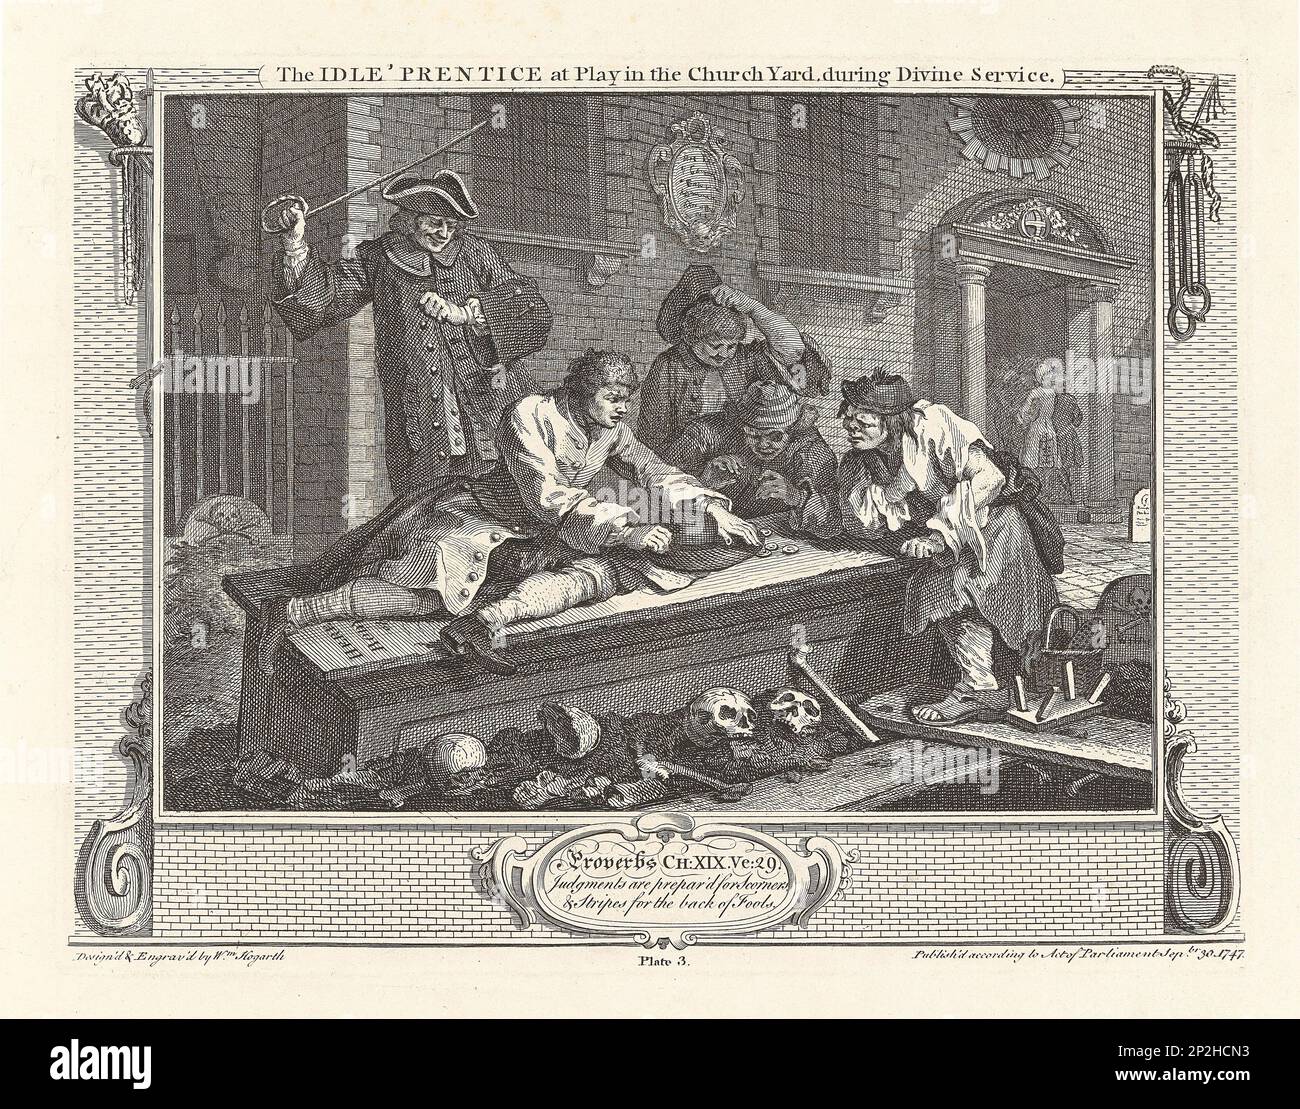 Serie "Industry and Idleness", Plate 3: The Idle 'Prentice at Play in the Church Yard, durante il Divino Servizio, 1747. Collezione privata. Foto Stock